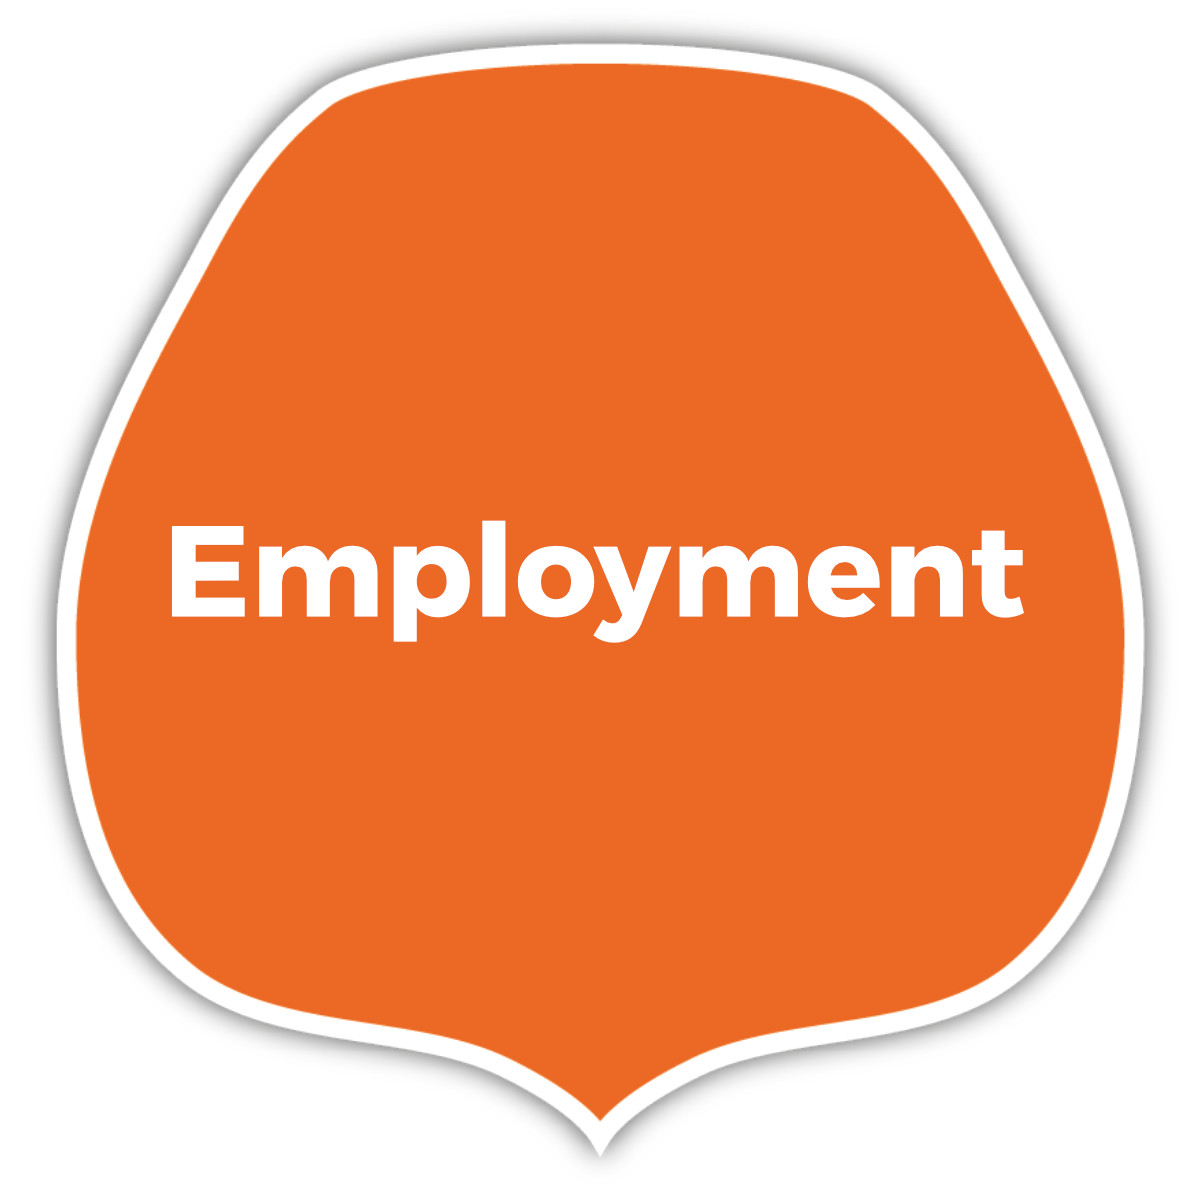 Employment button